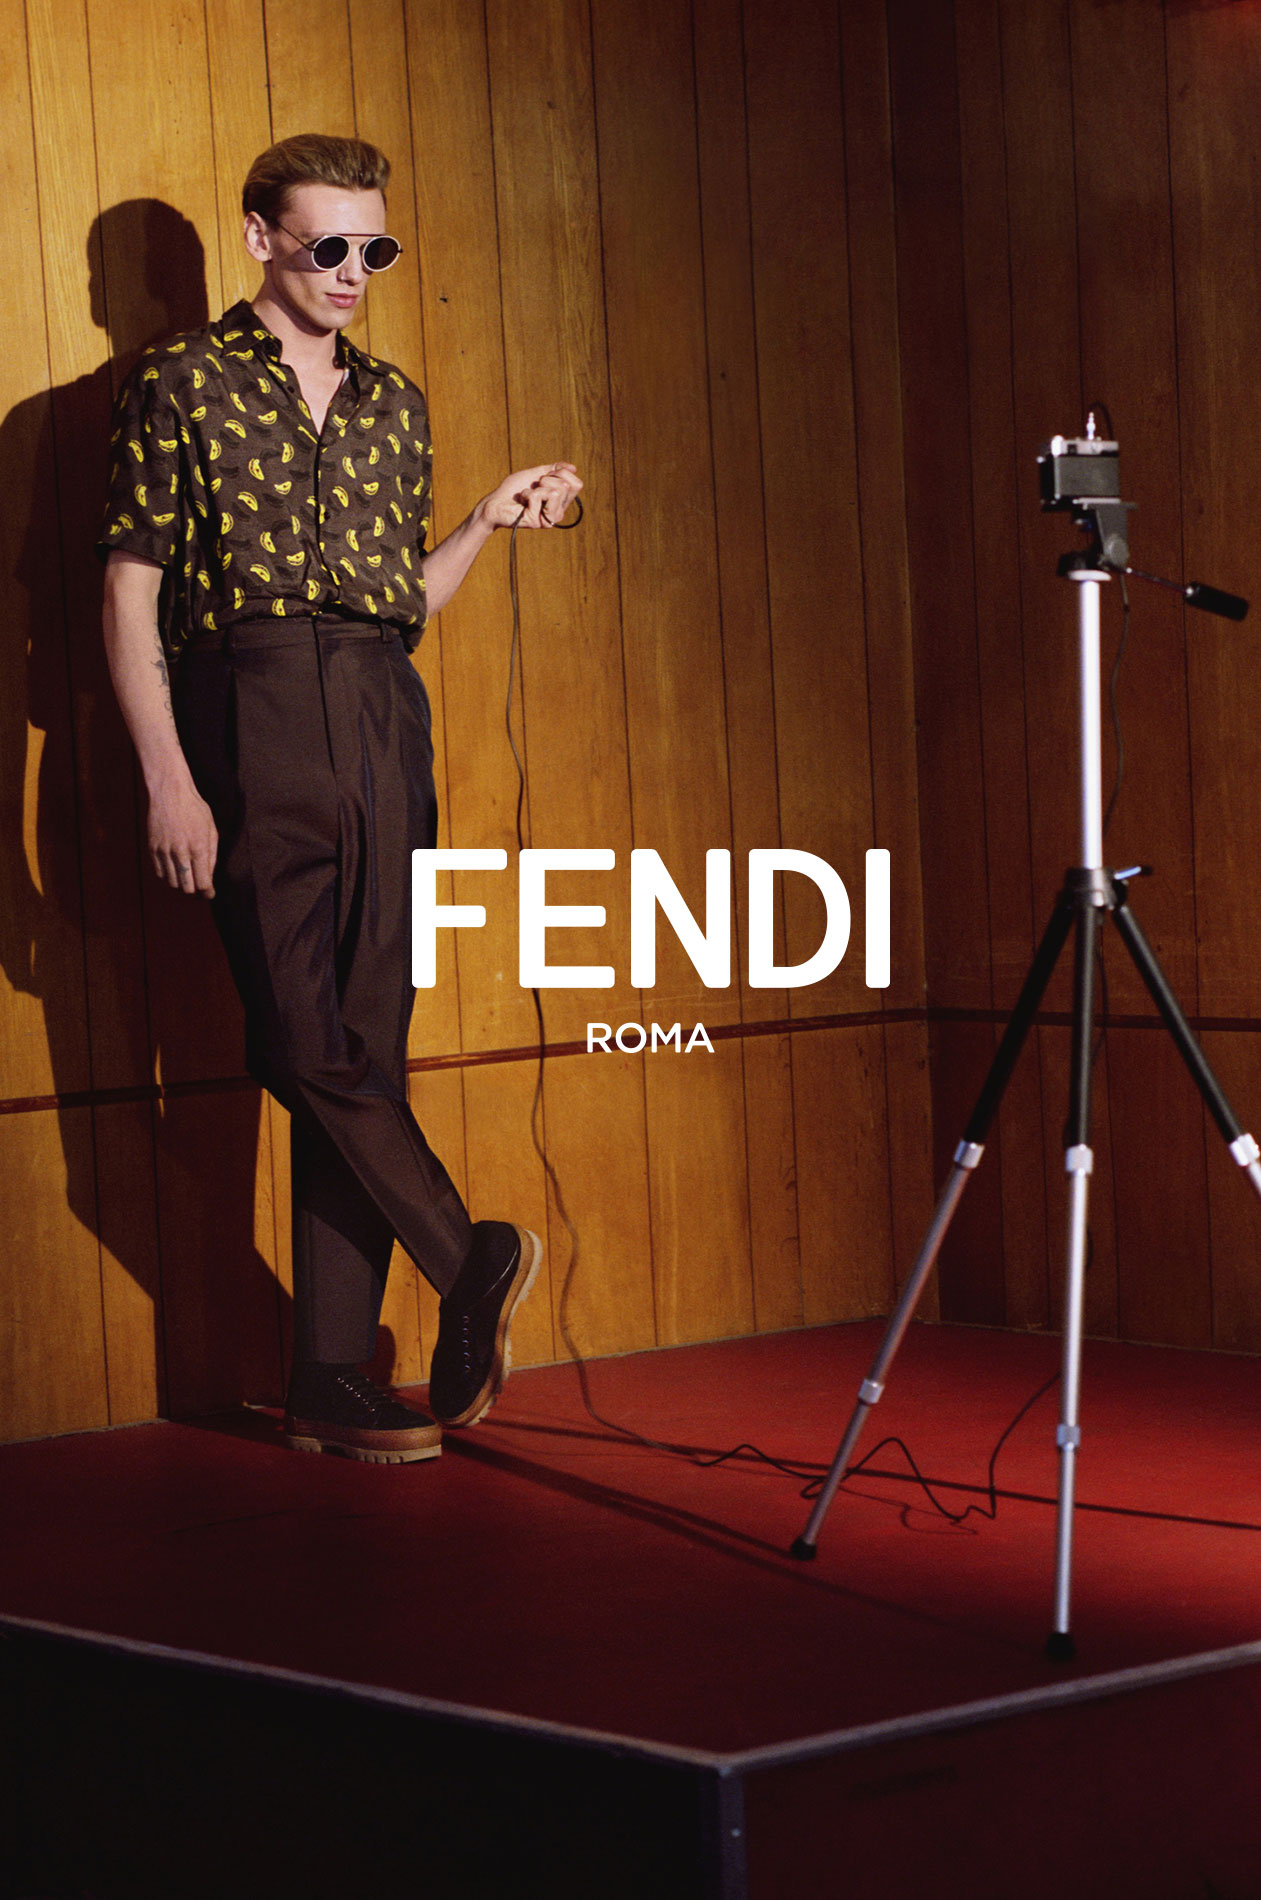 Fendi Identity Design as it appears in Fendi Advertising